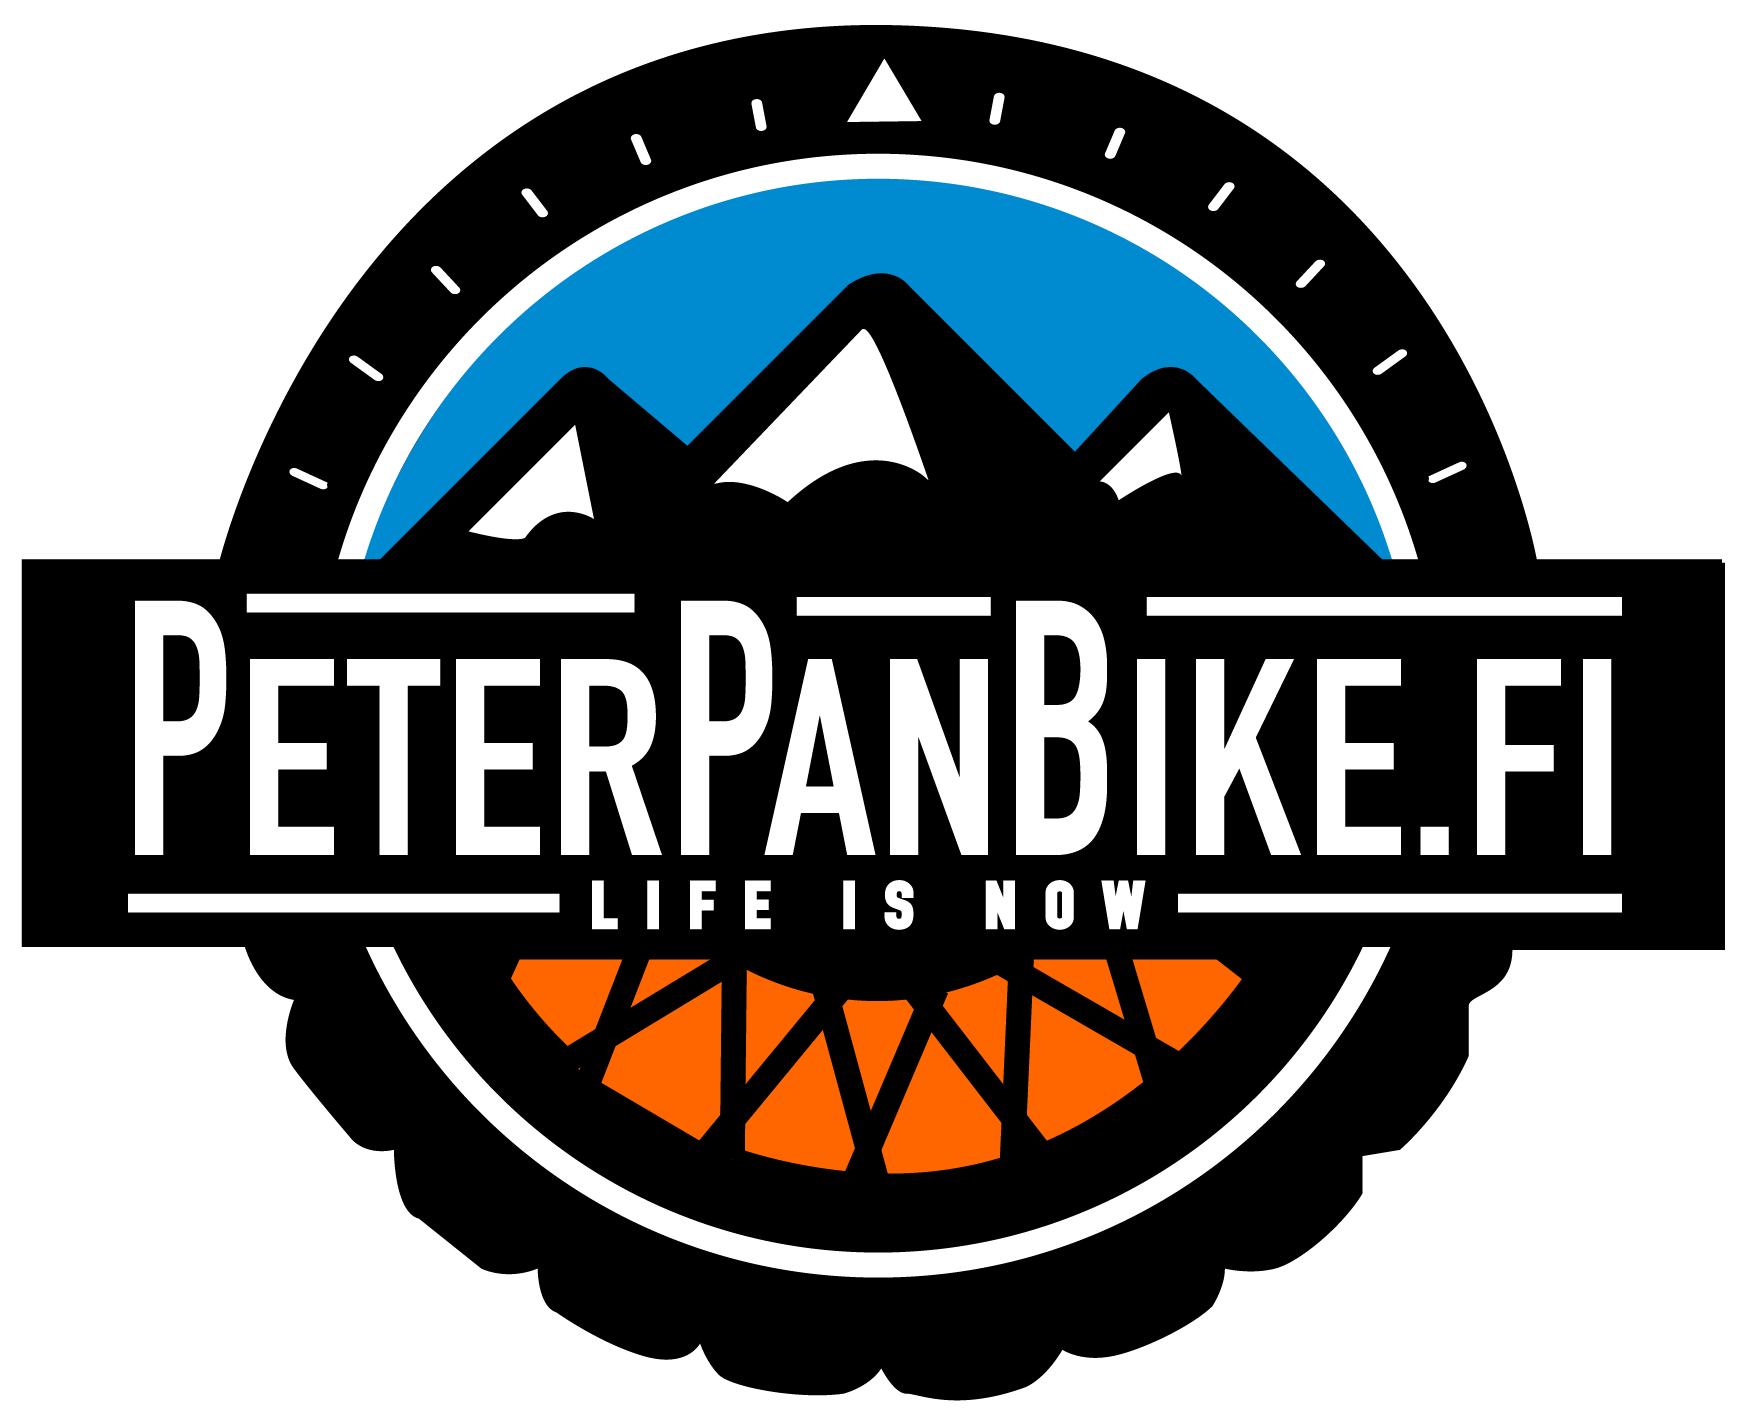 PeterPanBike moottoripyörämatkatoimiston logo